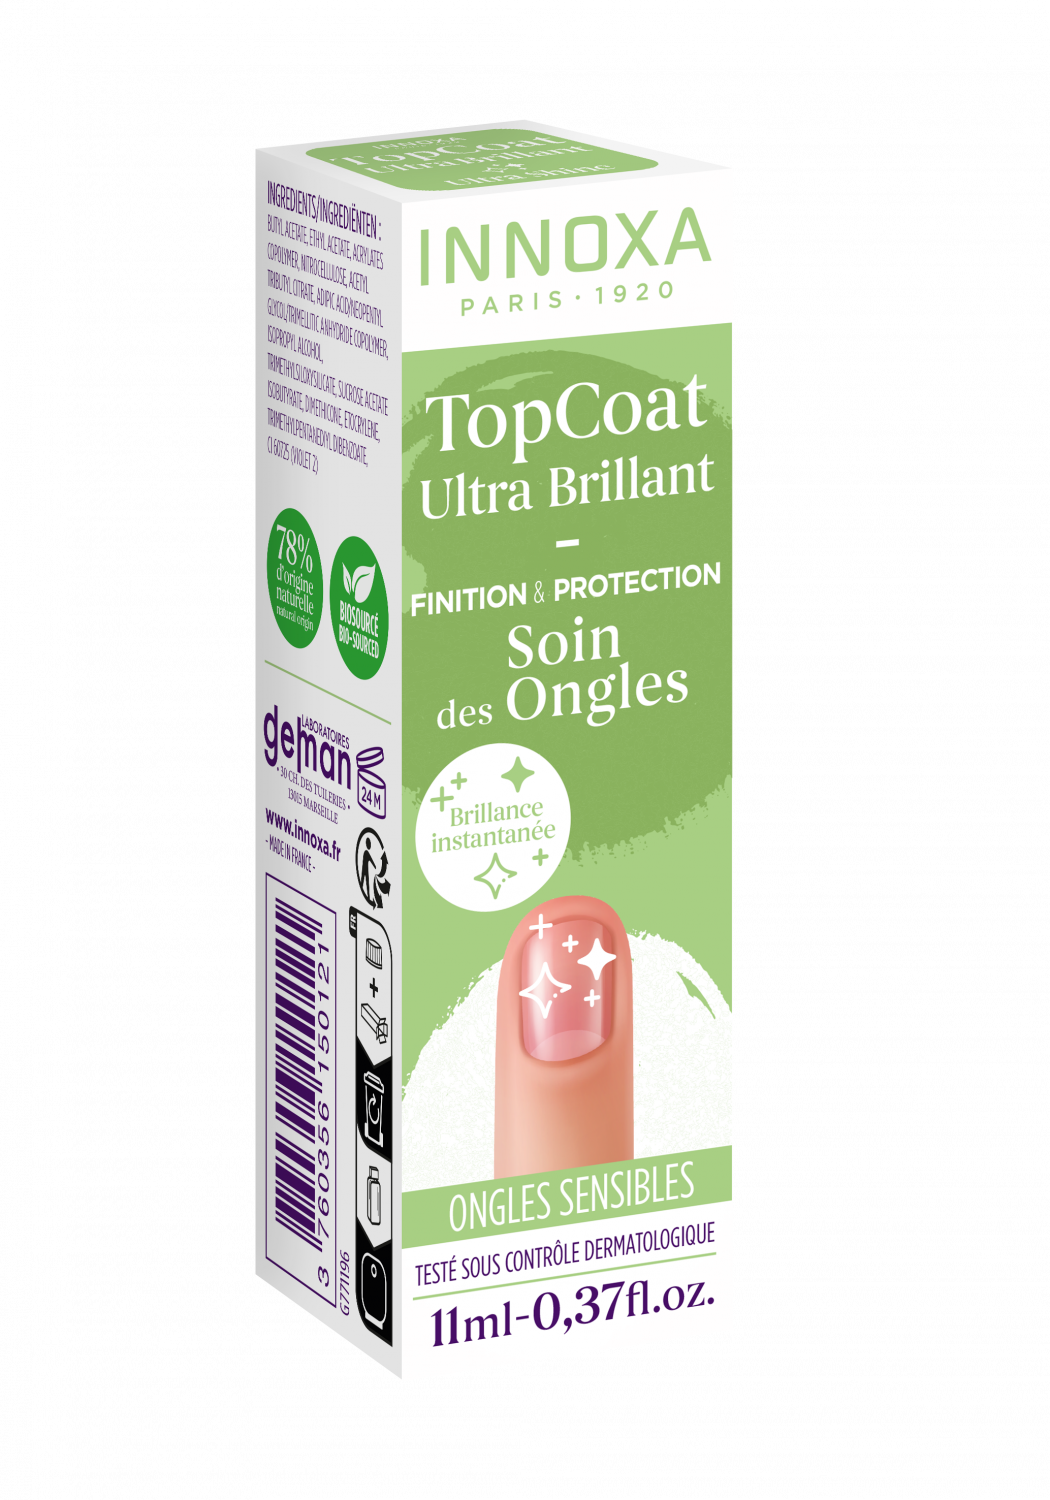 Top coat ultra brillant ongles sensibles Innoxa - flacon de 11 ml